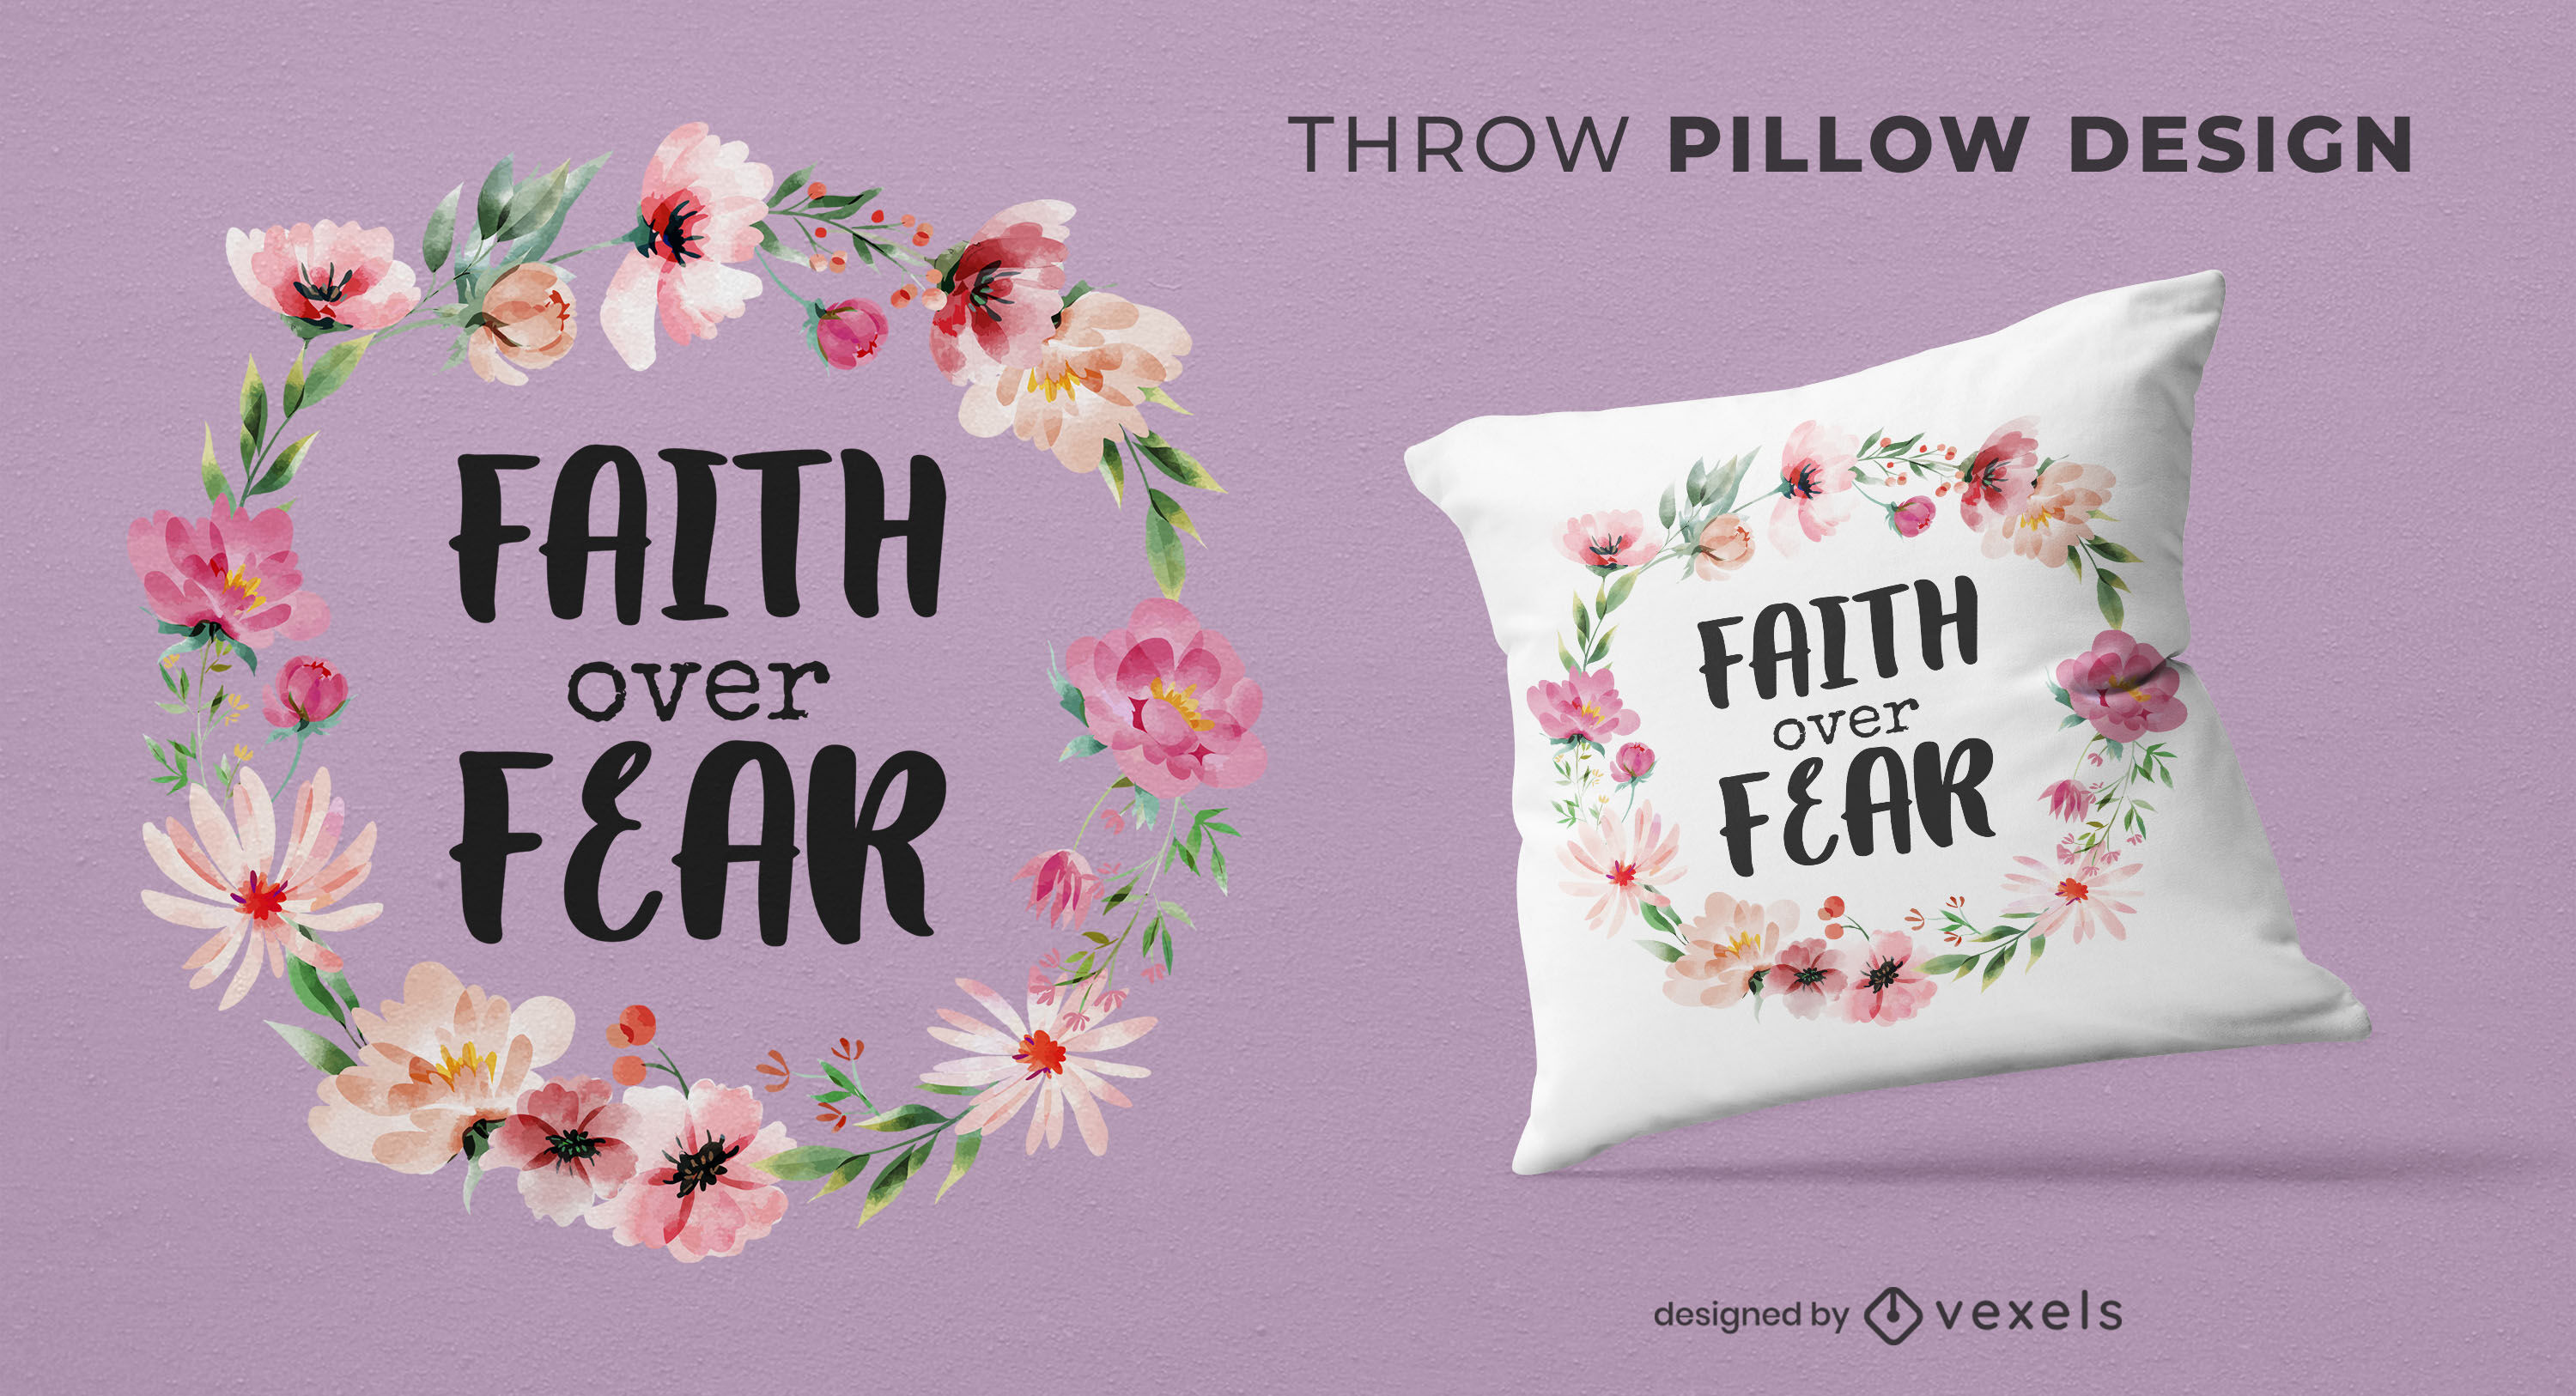 Faith over fear floral throw pillow design